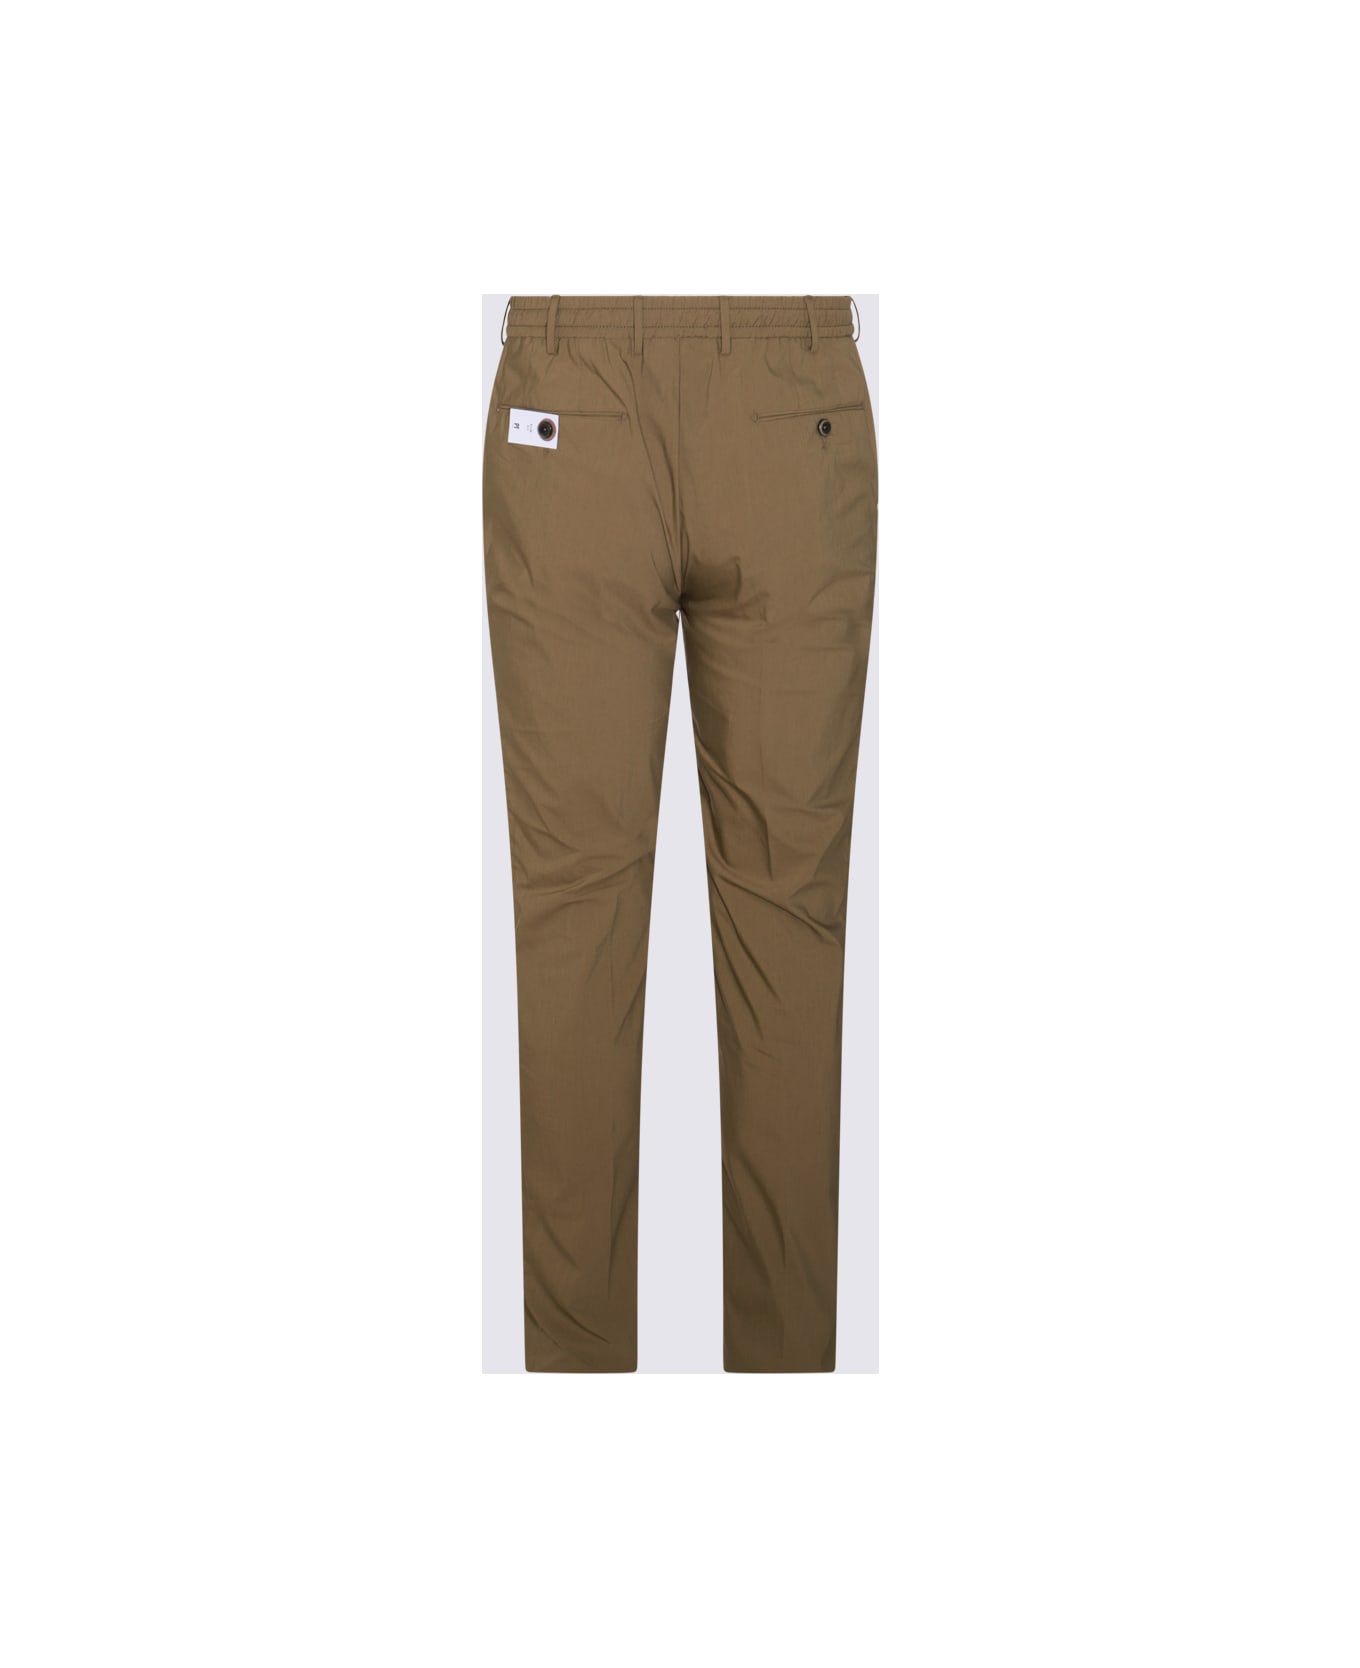 PT01 Brown Green Cotton Pants - VERDE MARCIO